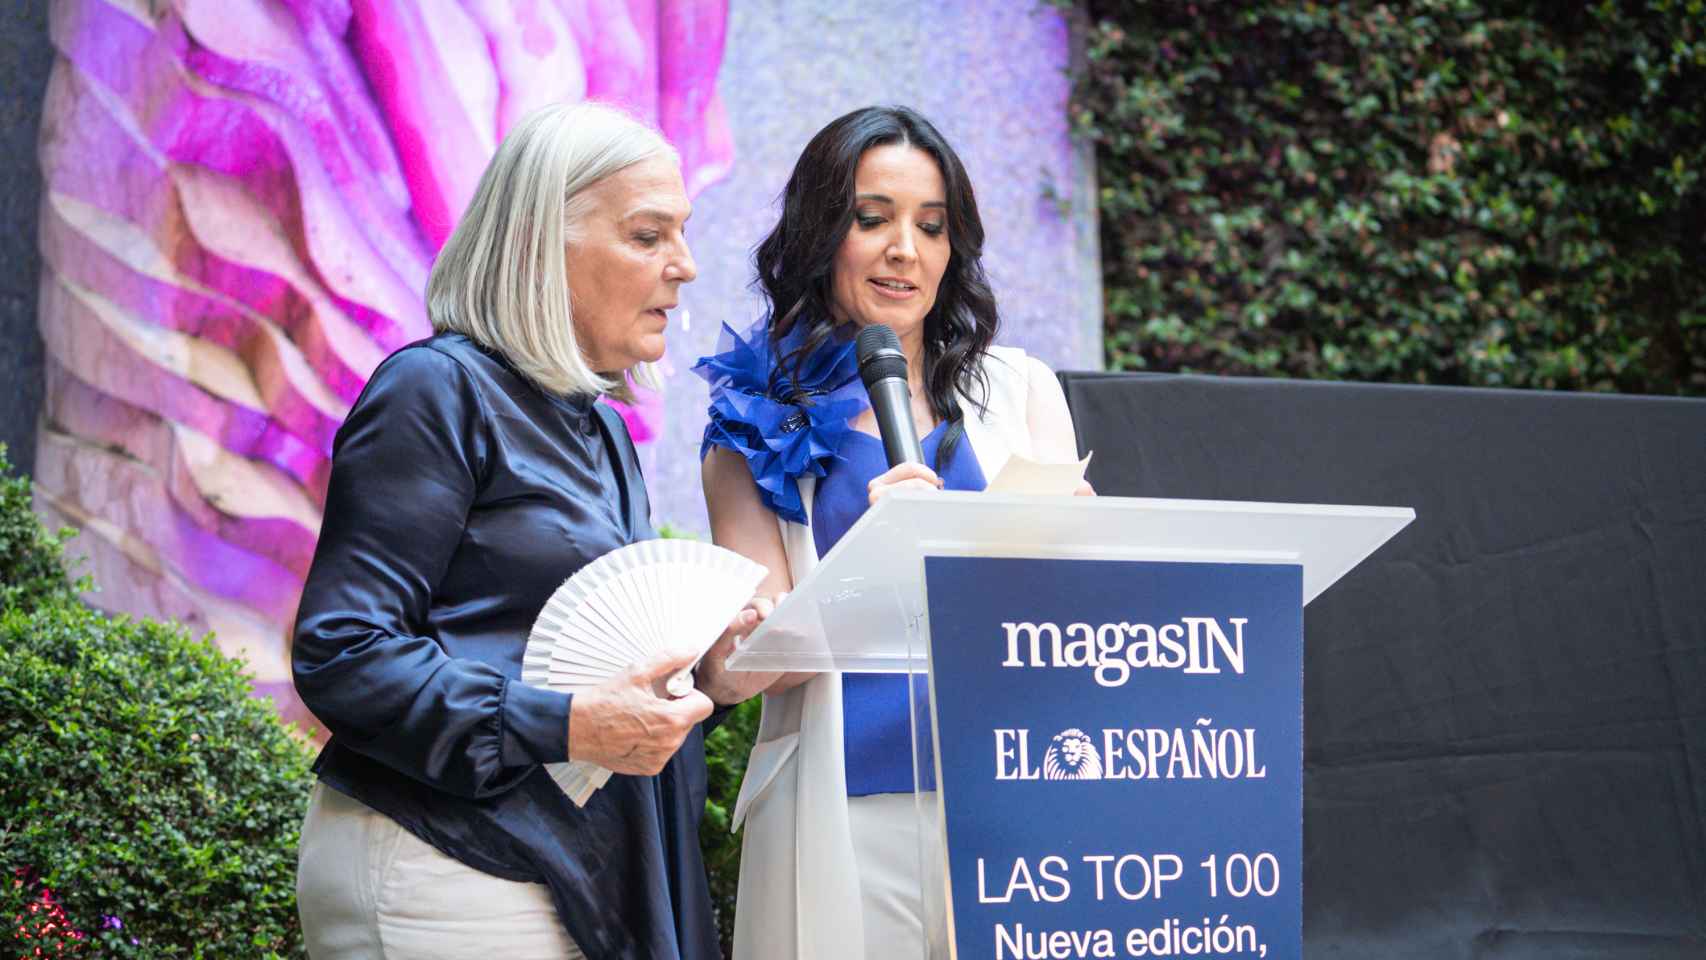 Mercedes Wullich y Cruz Sánchez de Lara presentando la nueva identidad de 'Las Top 100'.